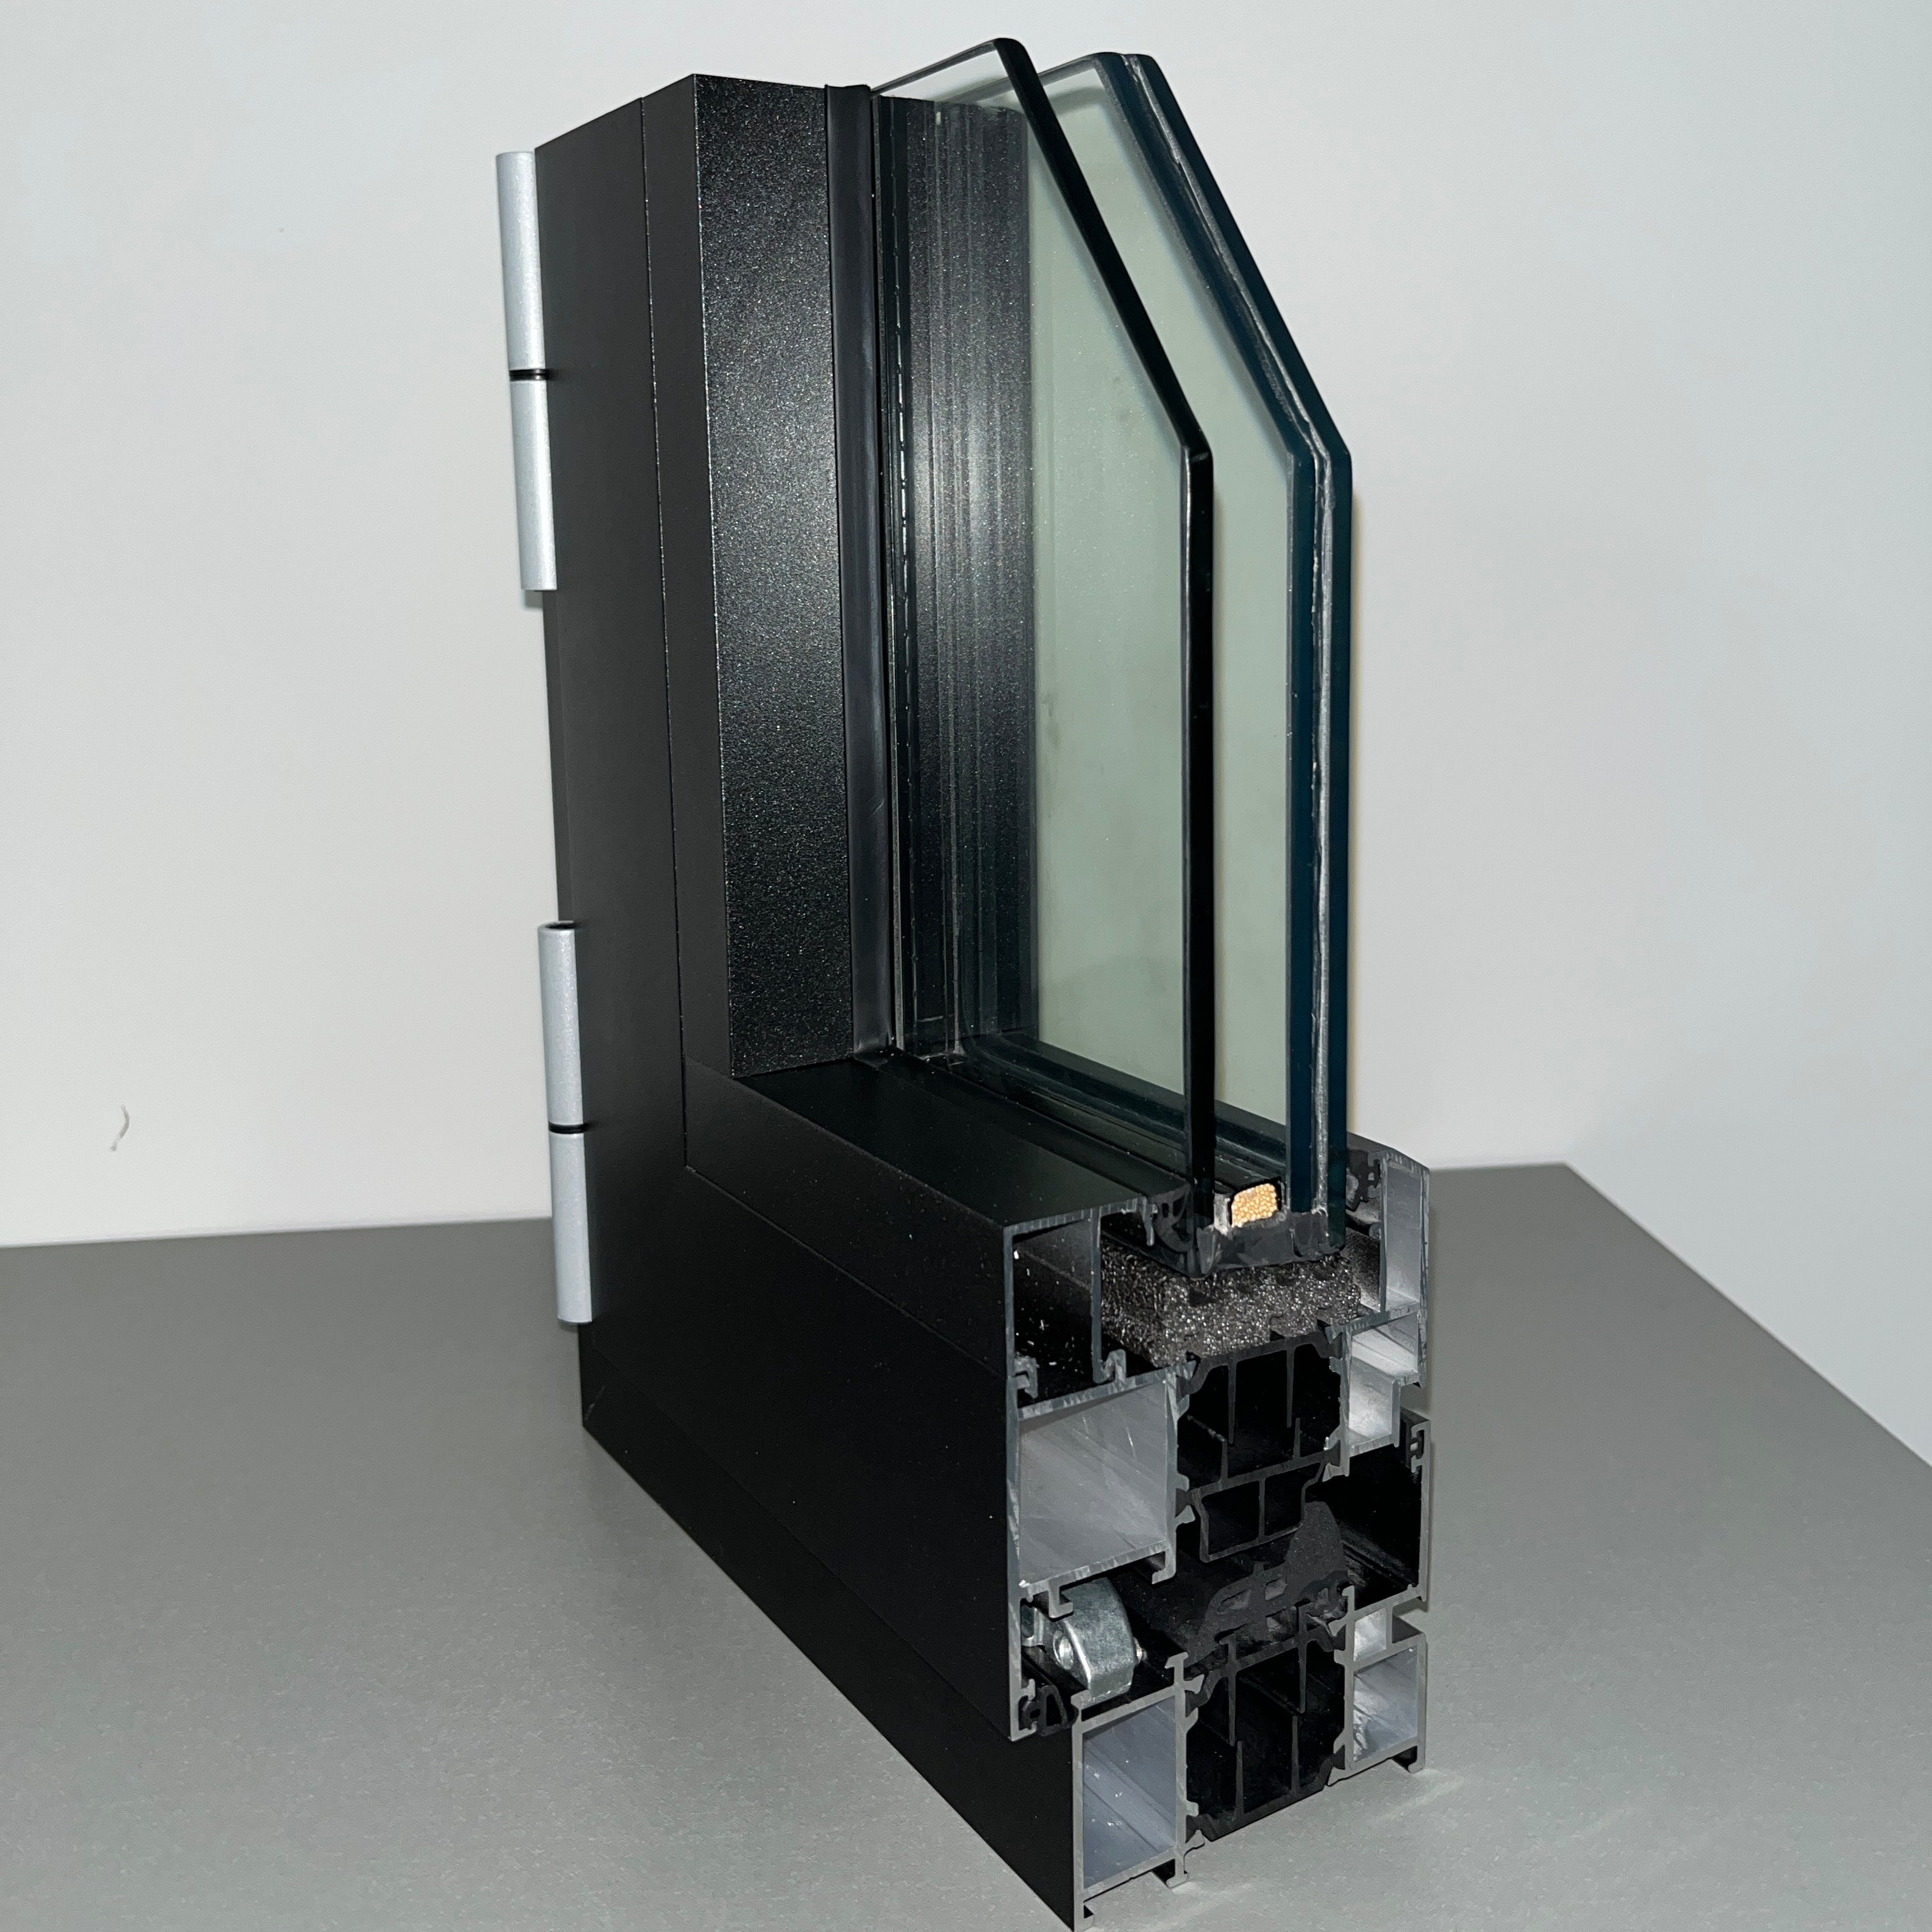 Warren 11x8 inch sample box easy to carry window and door sample